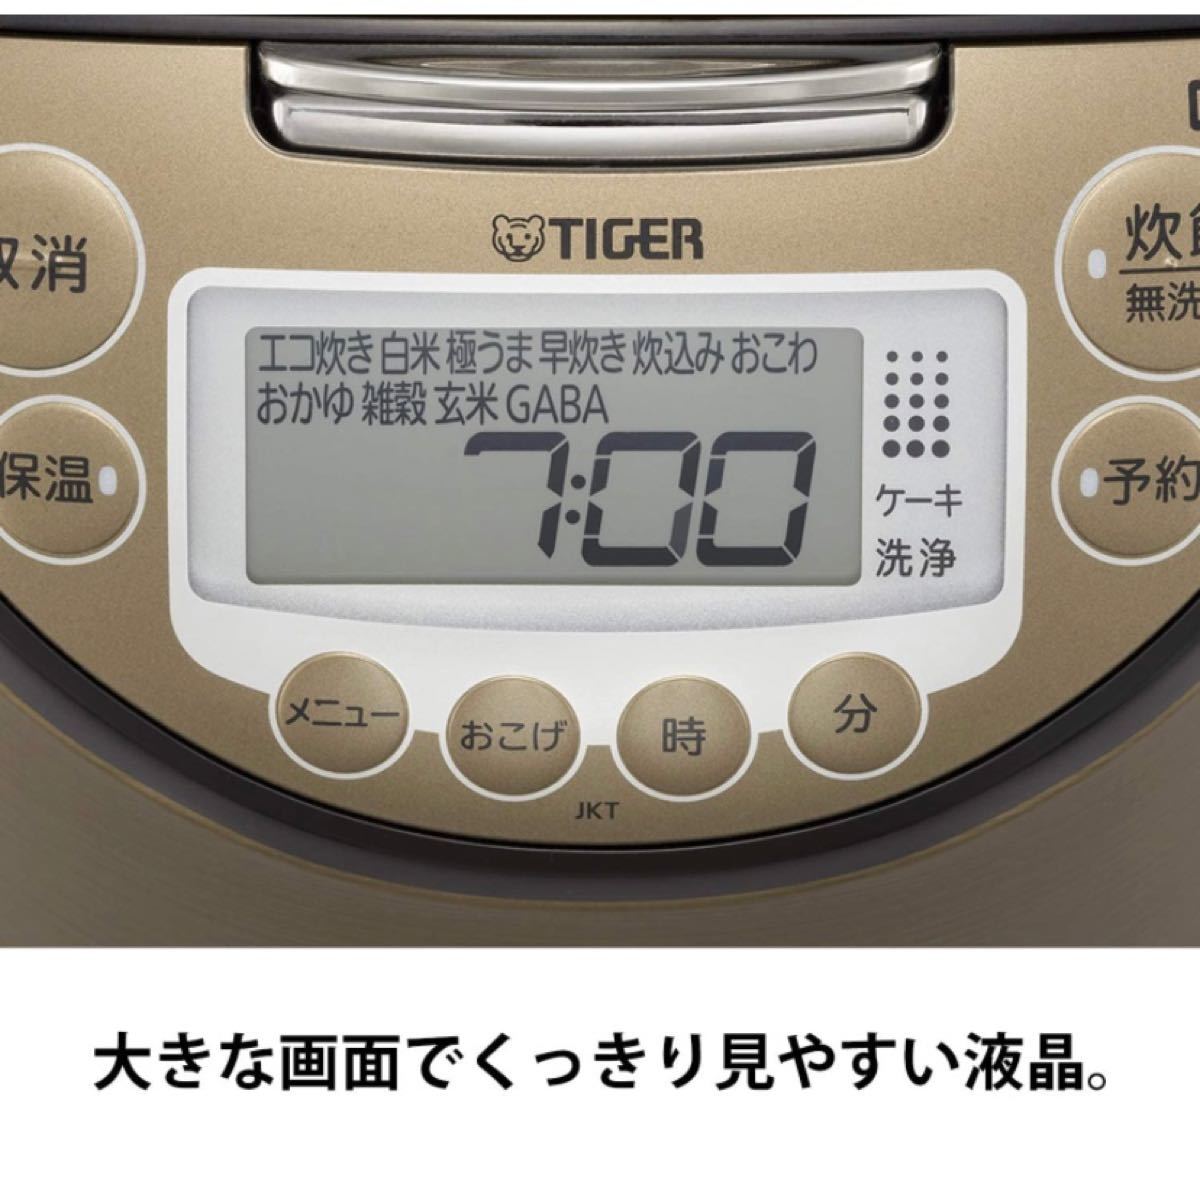 [新品] タイガー 5.5合炊き JKT-P100-TK IHジャー炊飯器